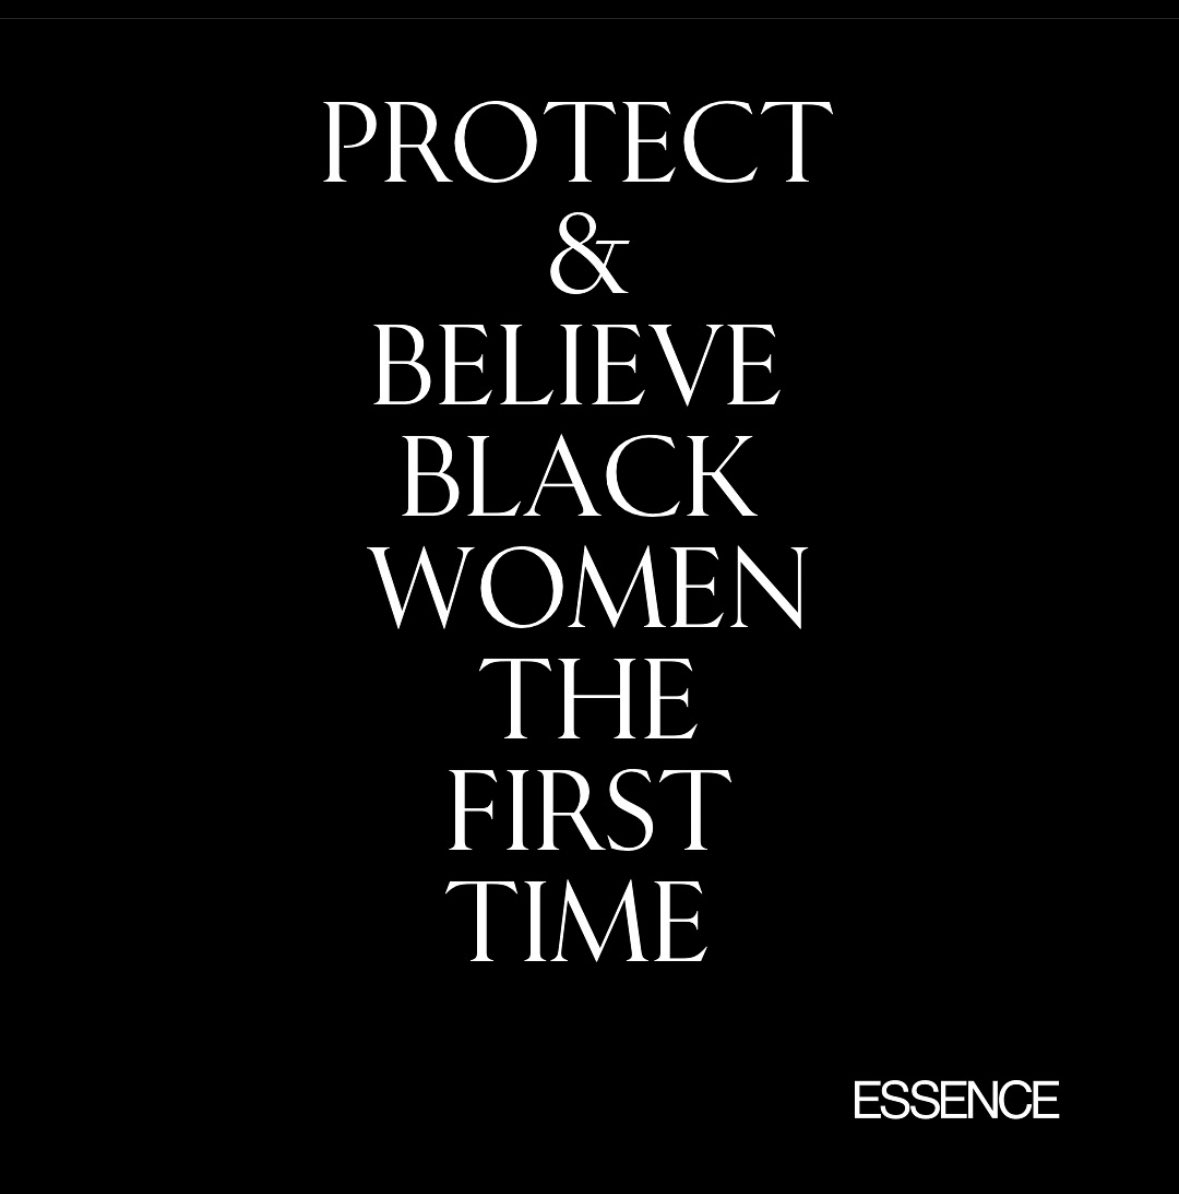 #protectourwomen